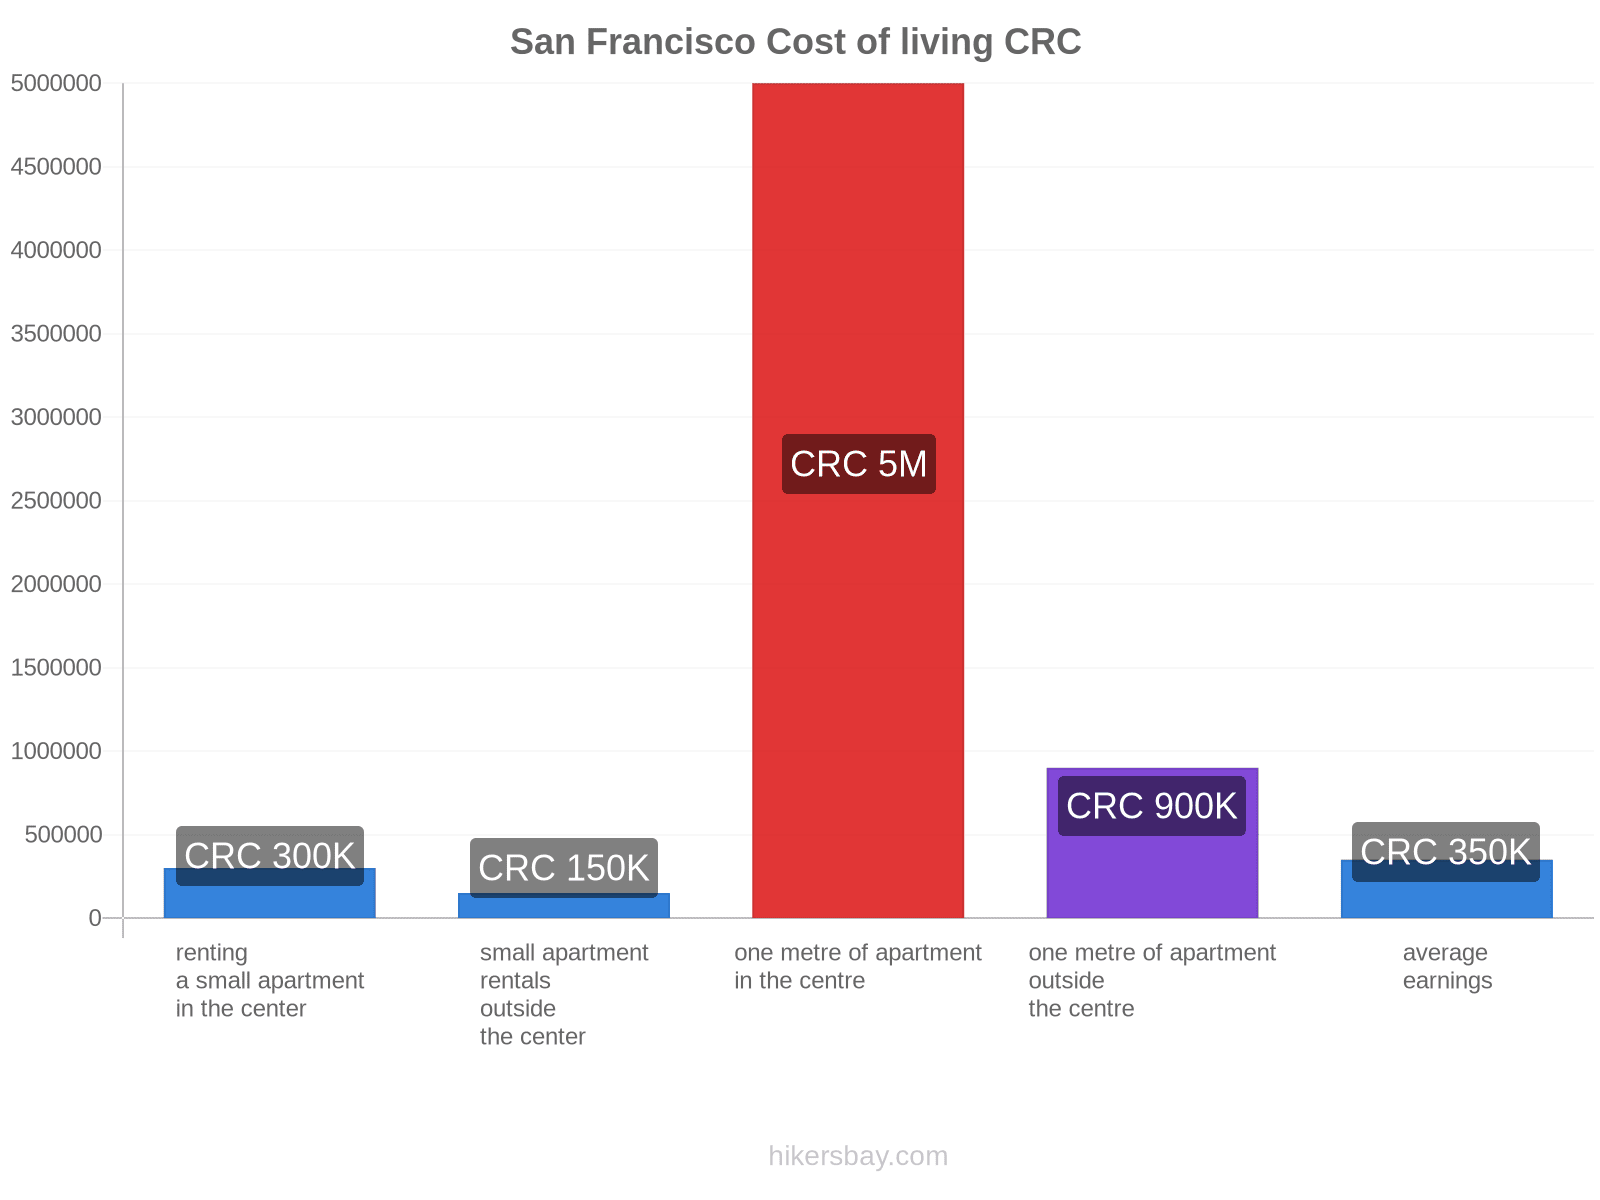 San Francisco cost of living hikersbay.com